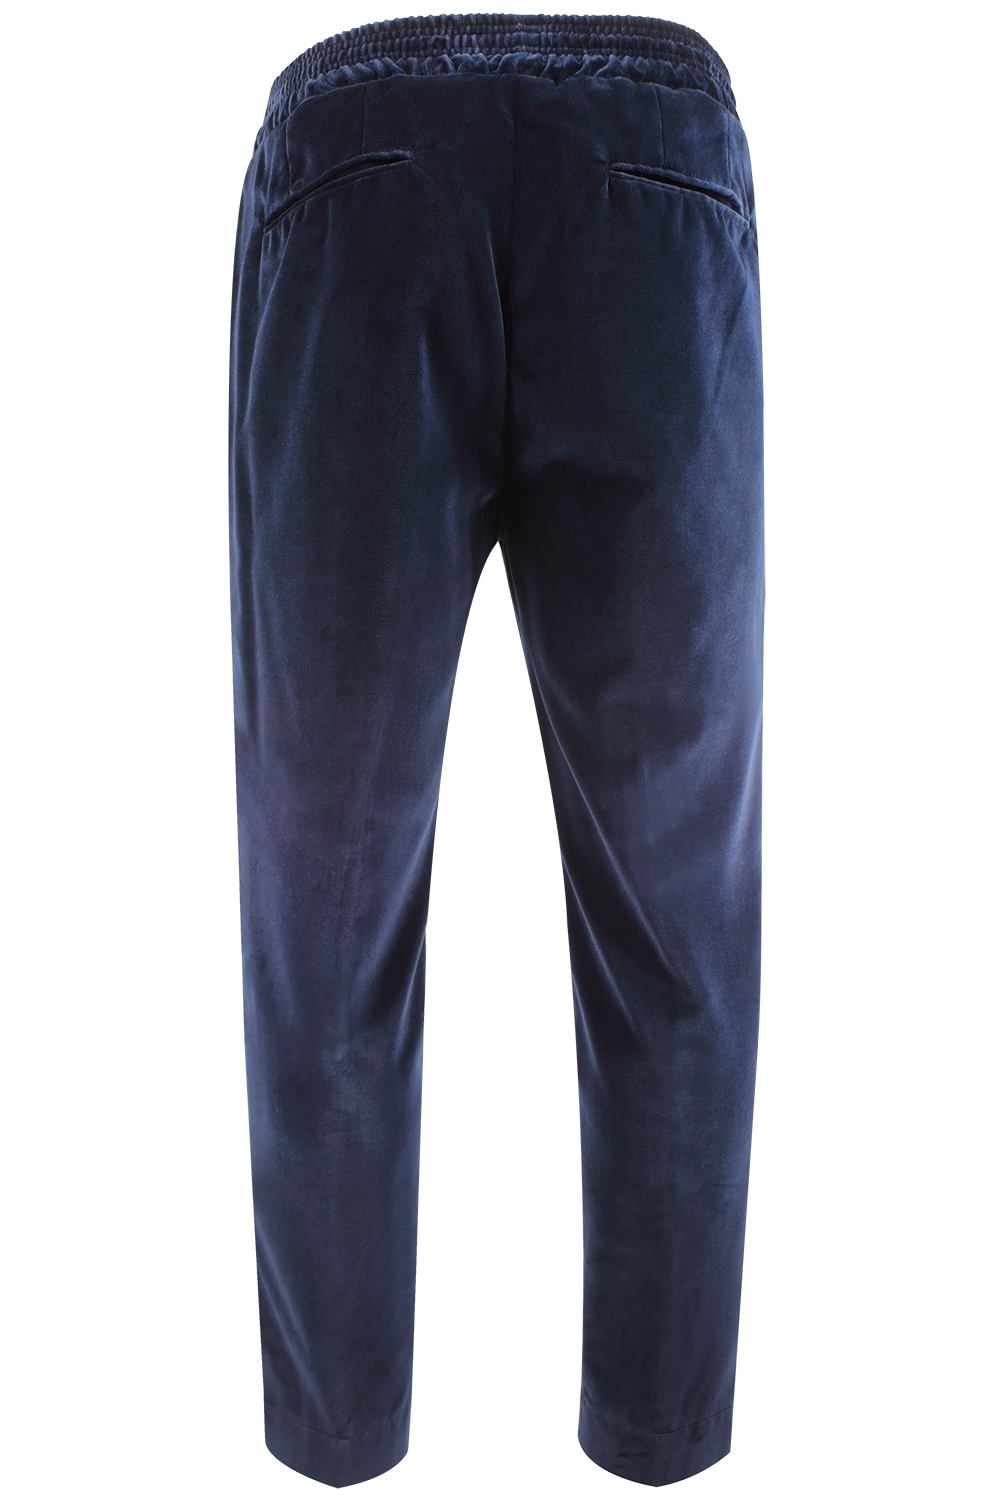 Pantalone con elastico in vita in velluto liscio blu retro